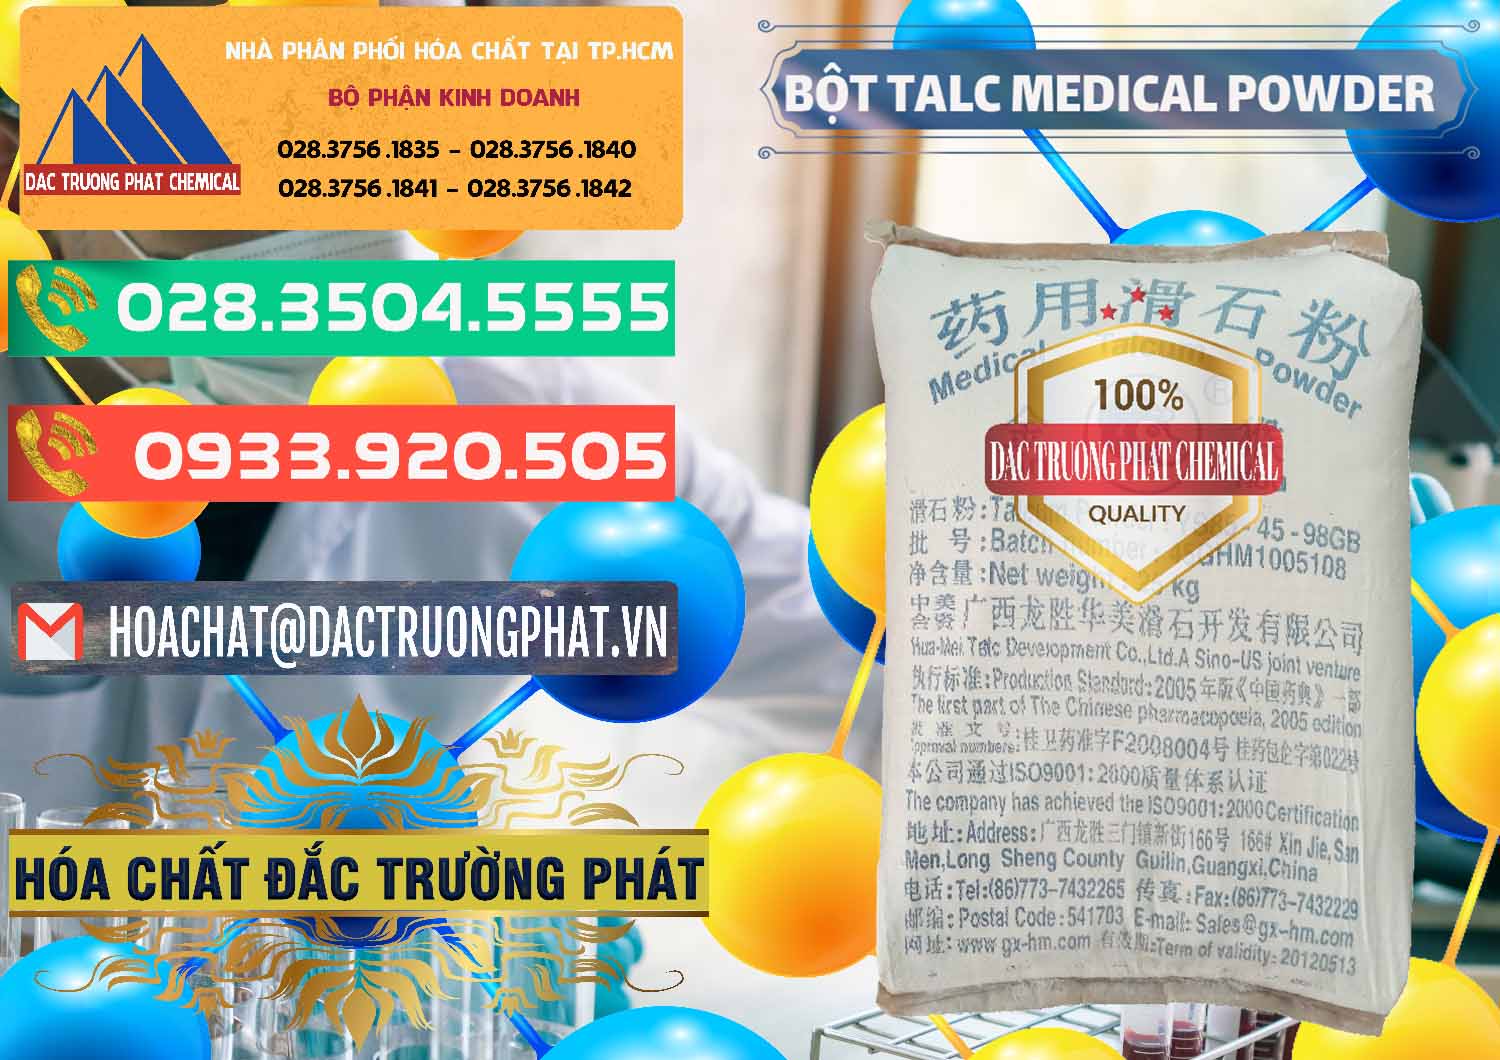 Cung cấp _ bán Bột Talc Medical Powder Trung Quốc China - 0036 - Cty cung cấp ( phân phối ) hóa chất tại TP.HCM - congtyhoachat.com.vn